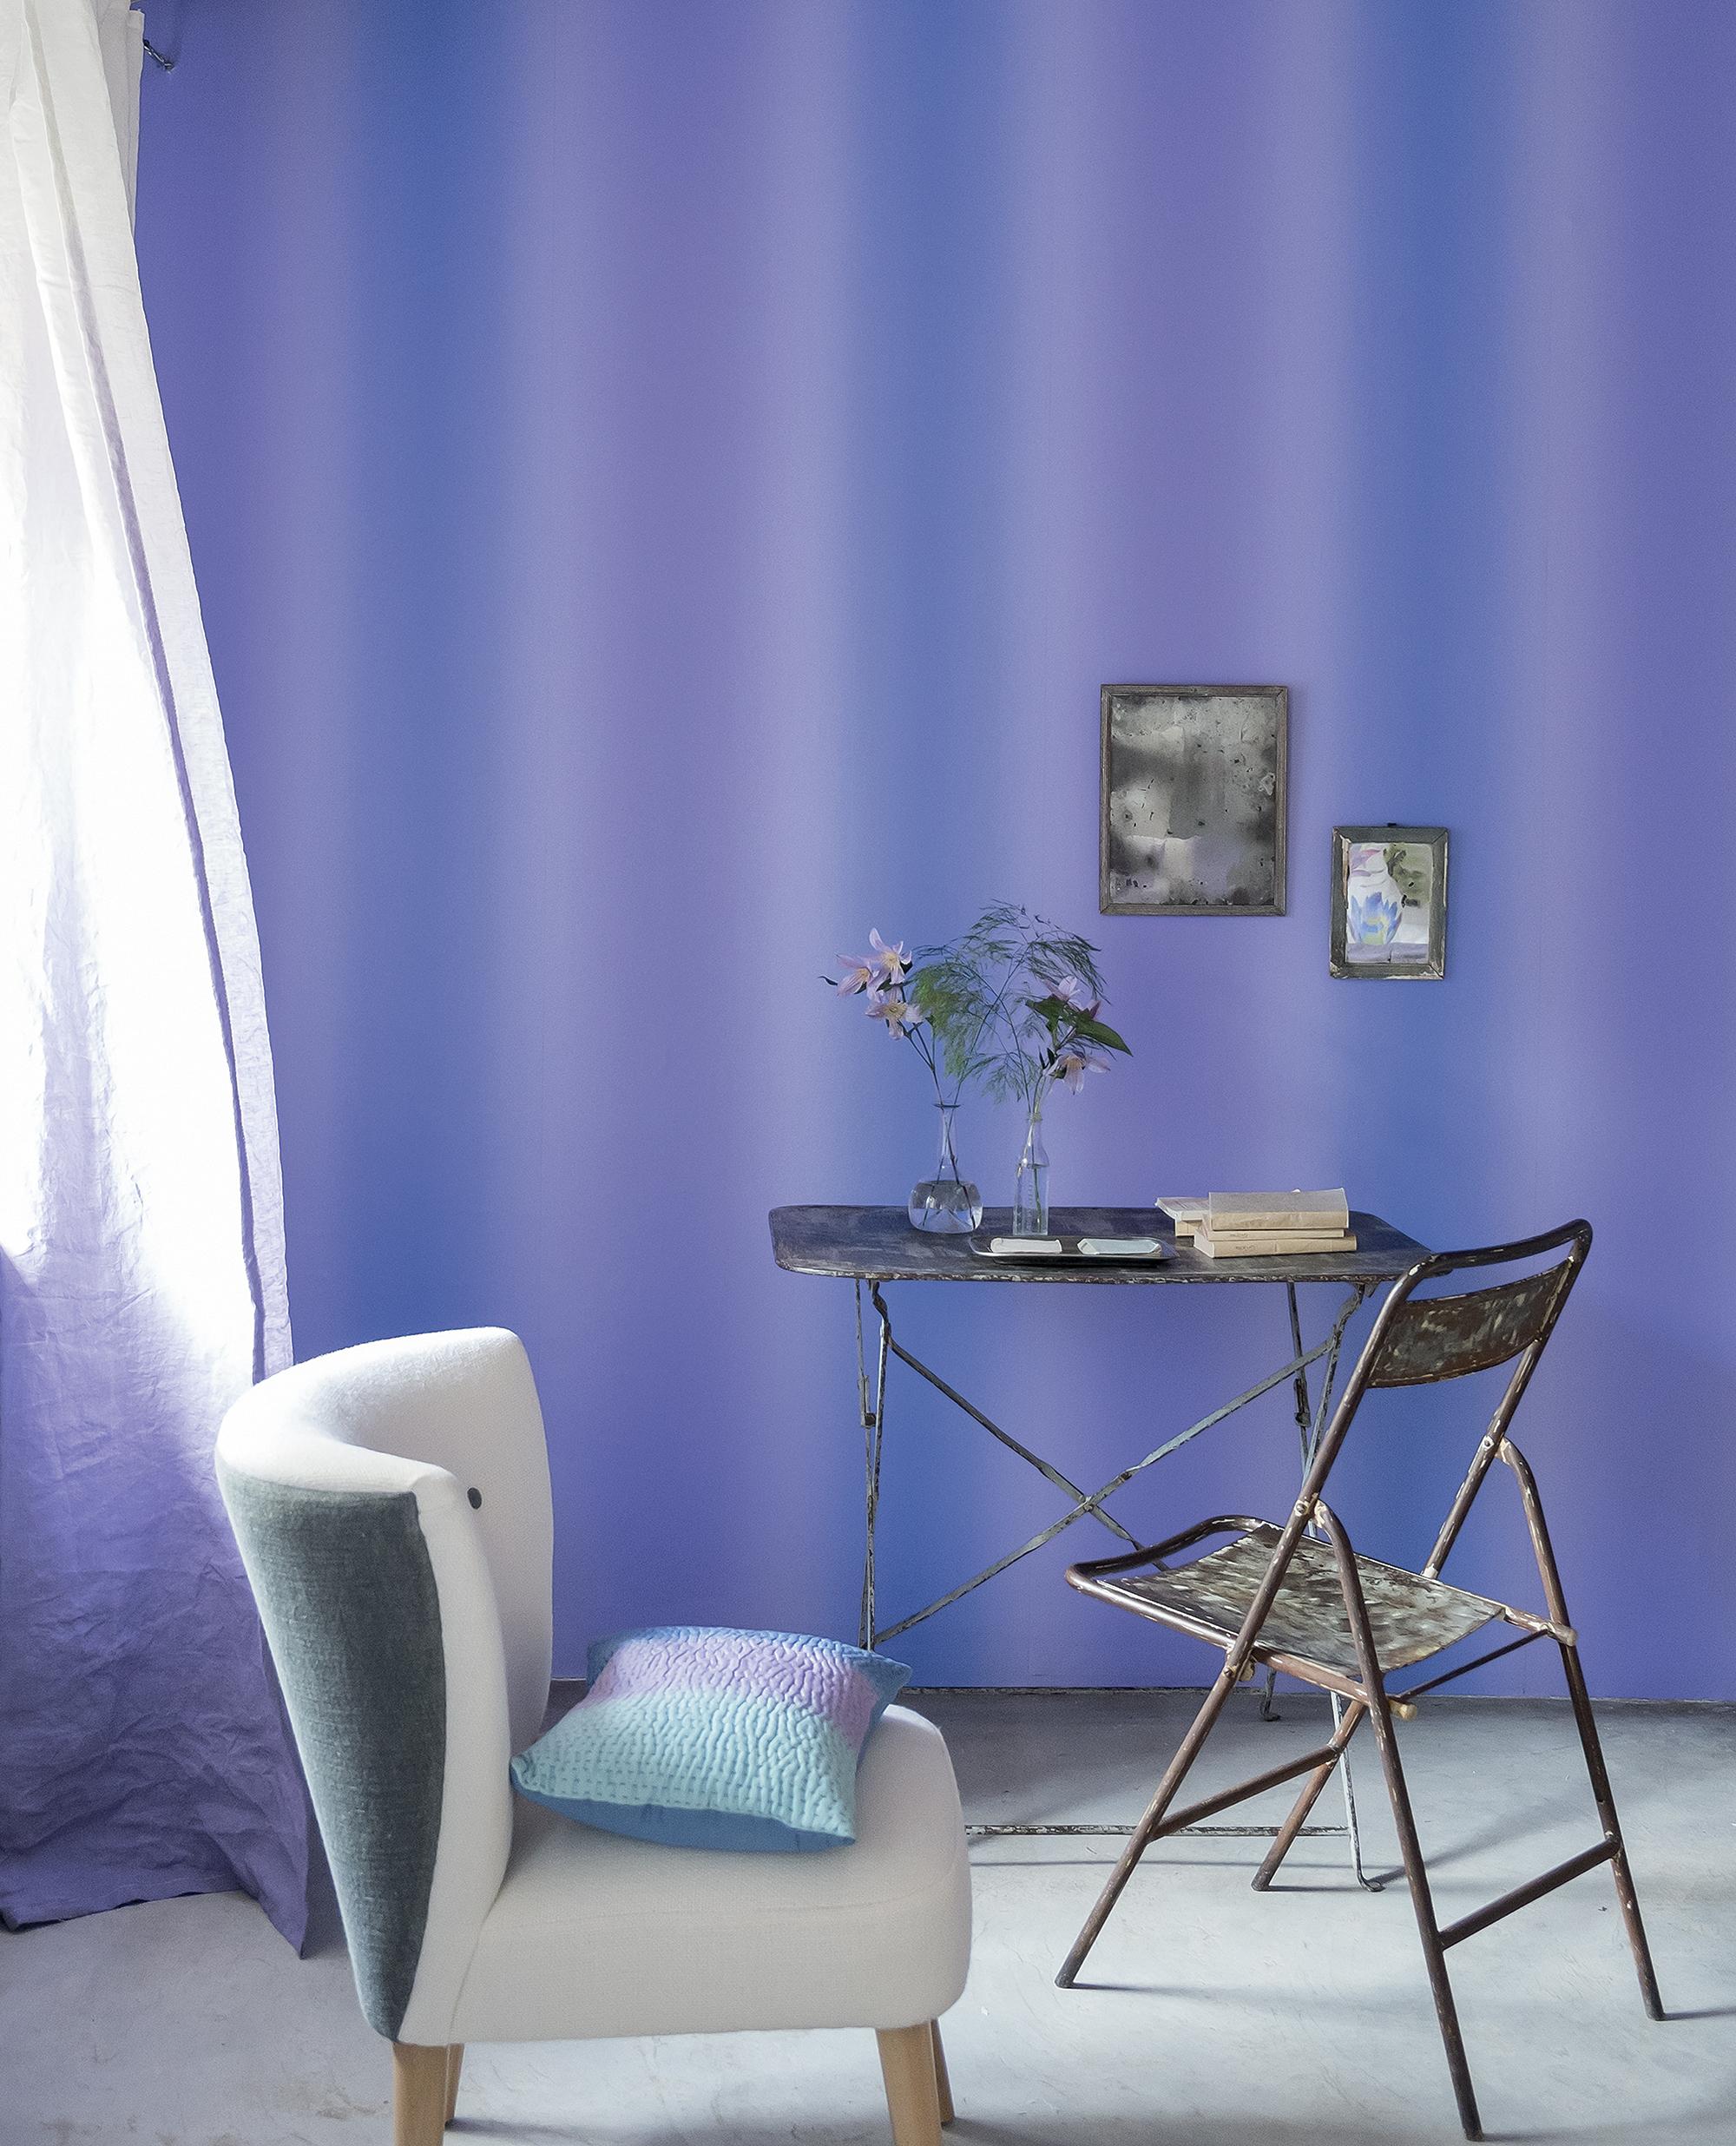 Arbeitstisch vor blauer Wand #schreibtisch #wandgestaltung #arbeitsecke #metallschreibtisch #designwand ©Designers Guild